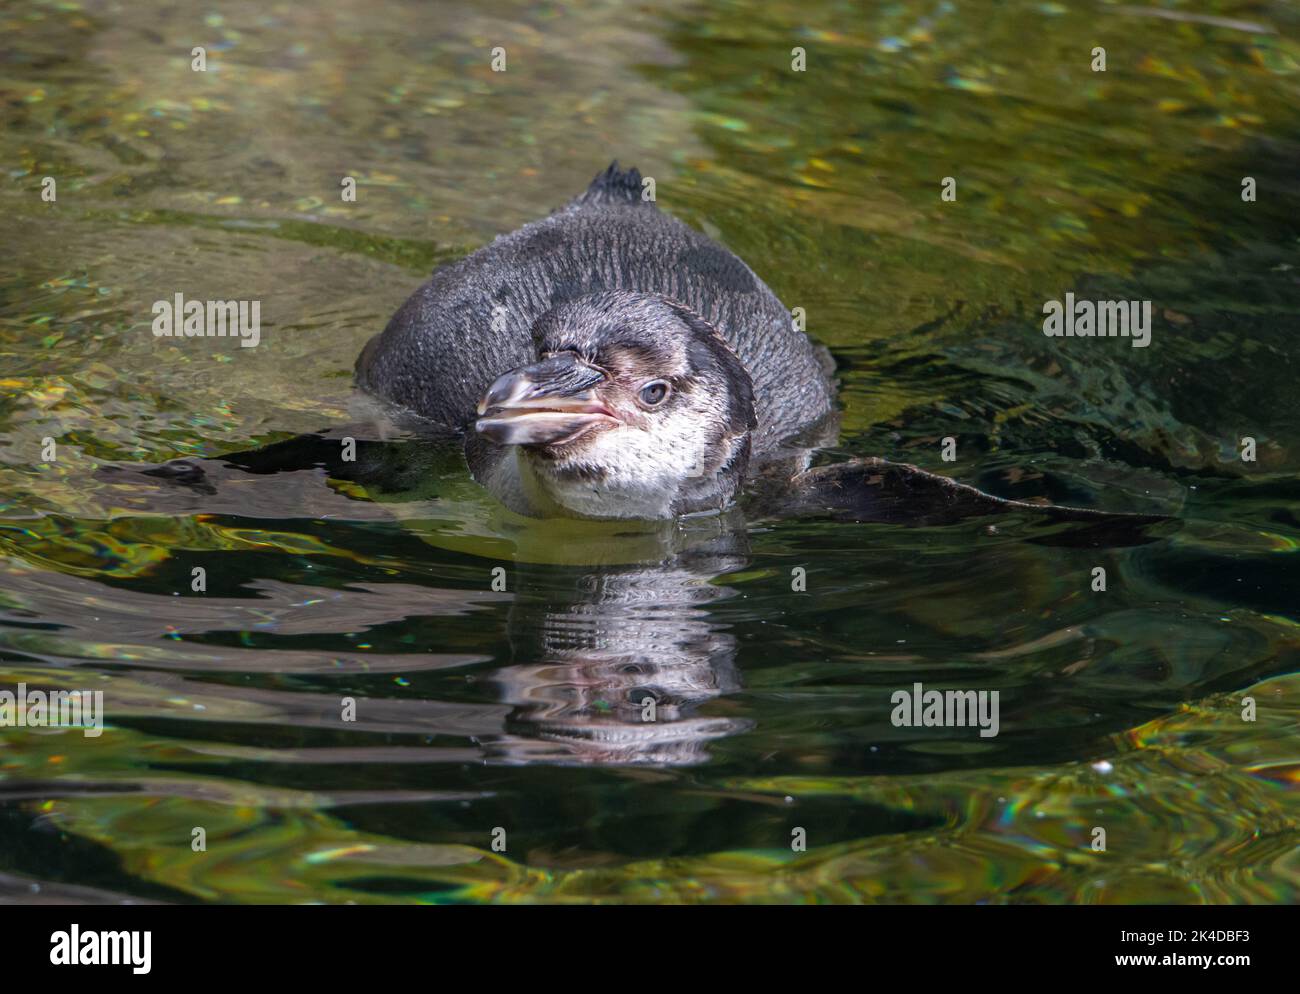 Le pingouin Humboldt (Spheniscus humboldti) nagent dans une eau Banque D'Images